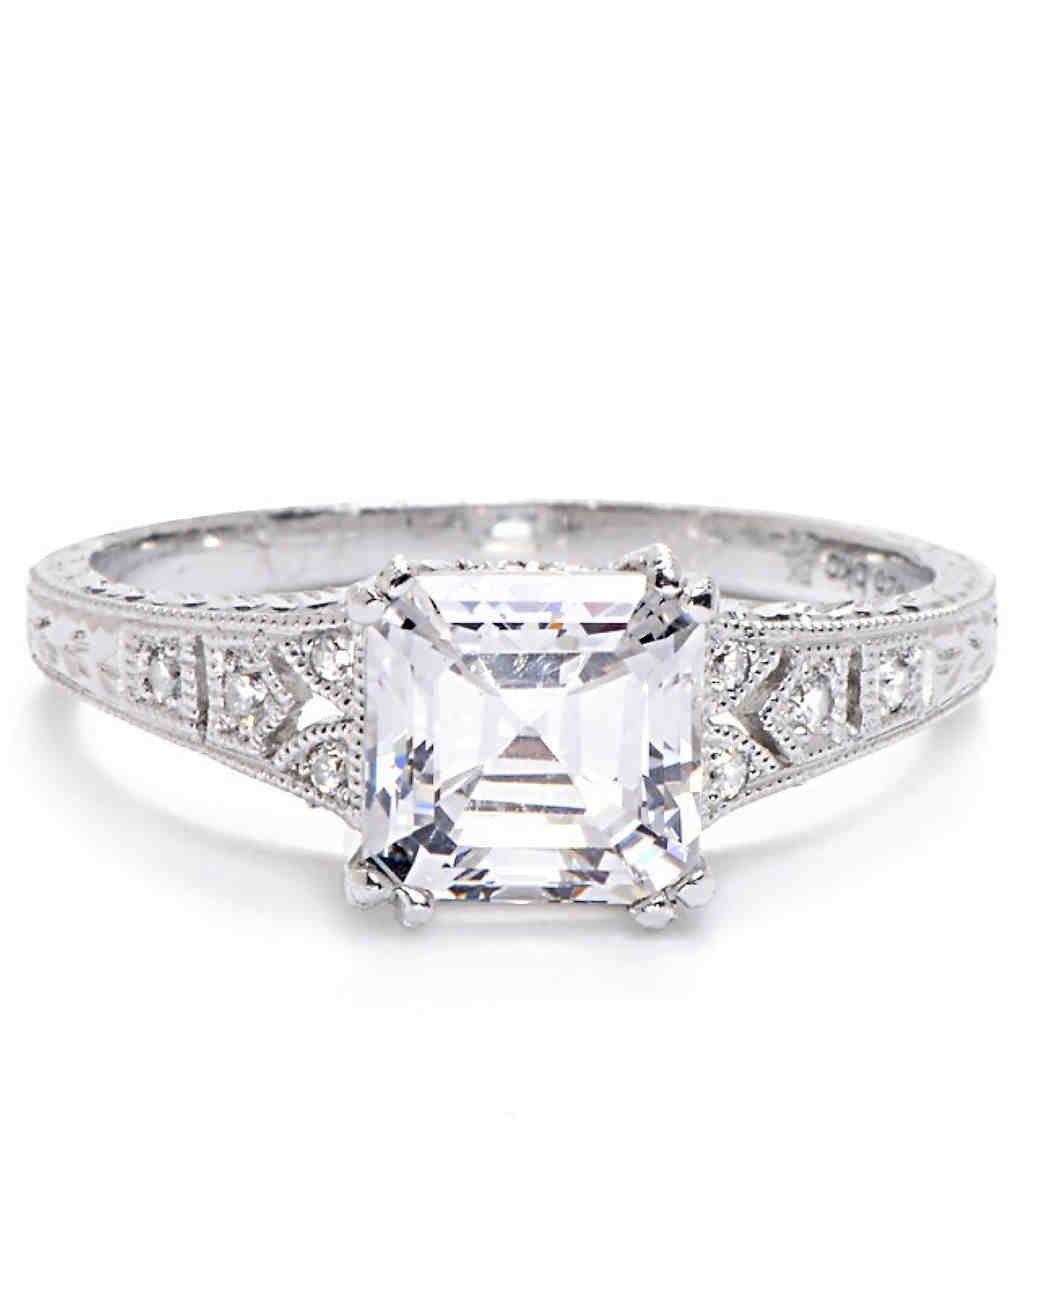 Asscher Cut Diamond Engagement Rings
 Asscher Cut Diamond Engagement Rings